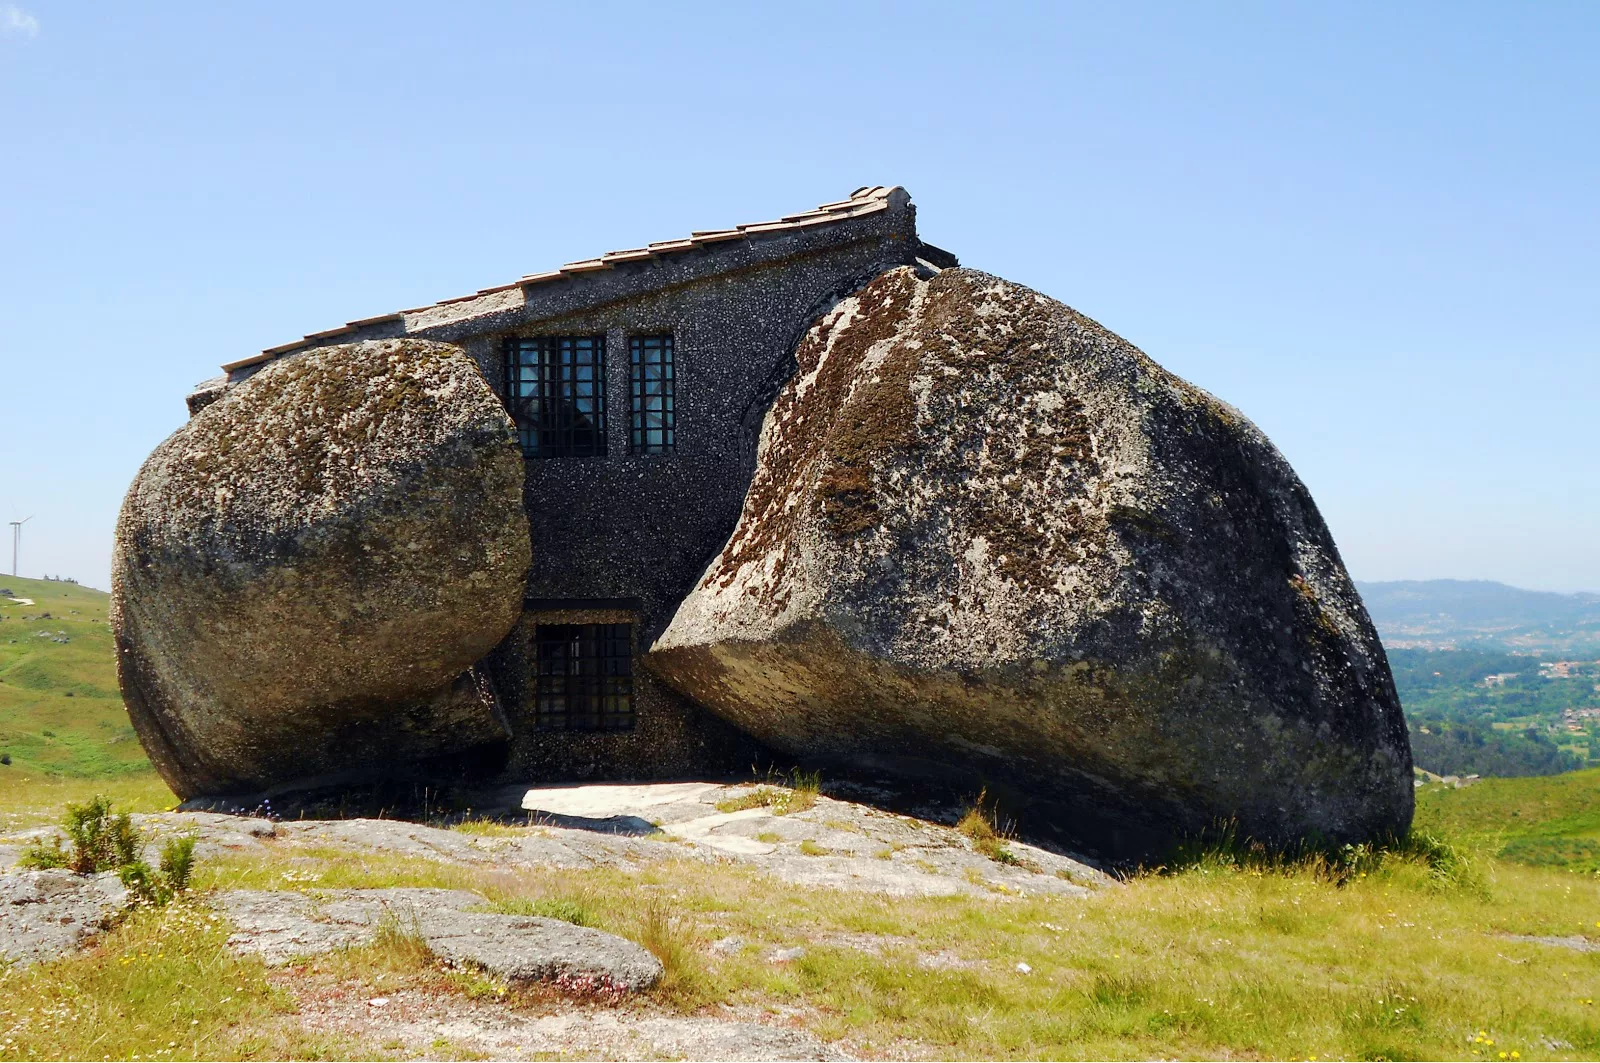 Foto della casa di pietra realizzata in Portogallo